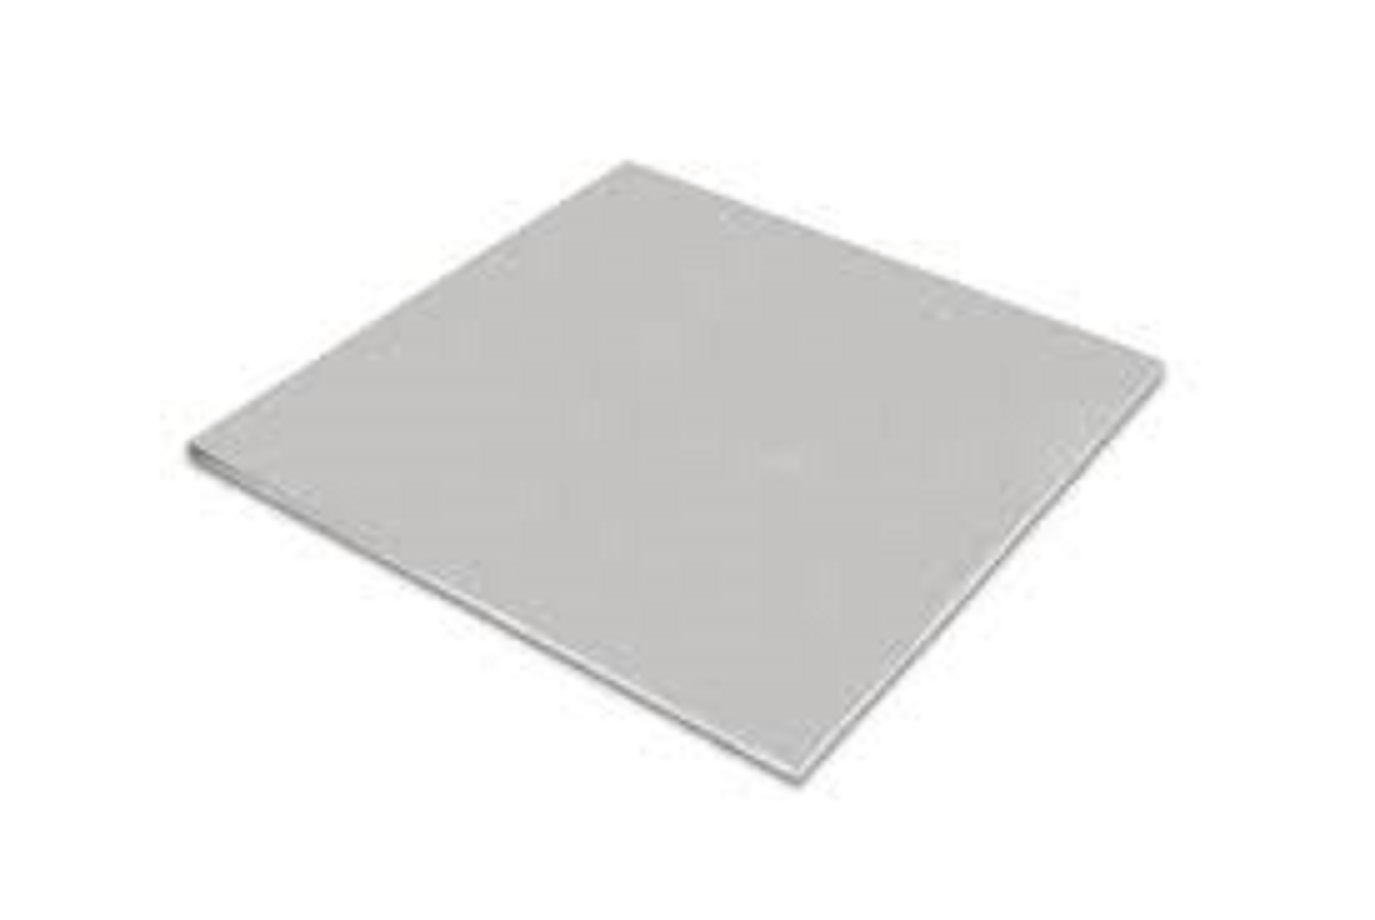 .188 3/16" Aluminum Sheet Plate 5052  6" x 12" 